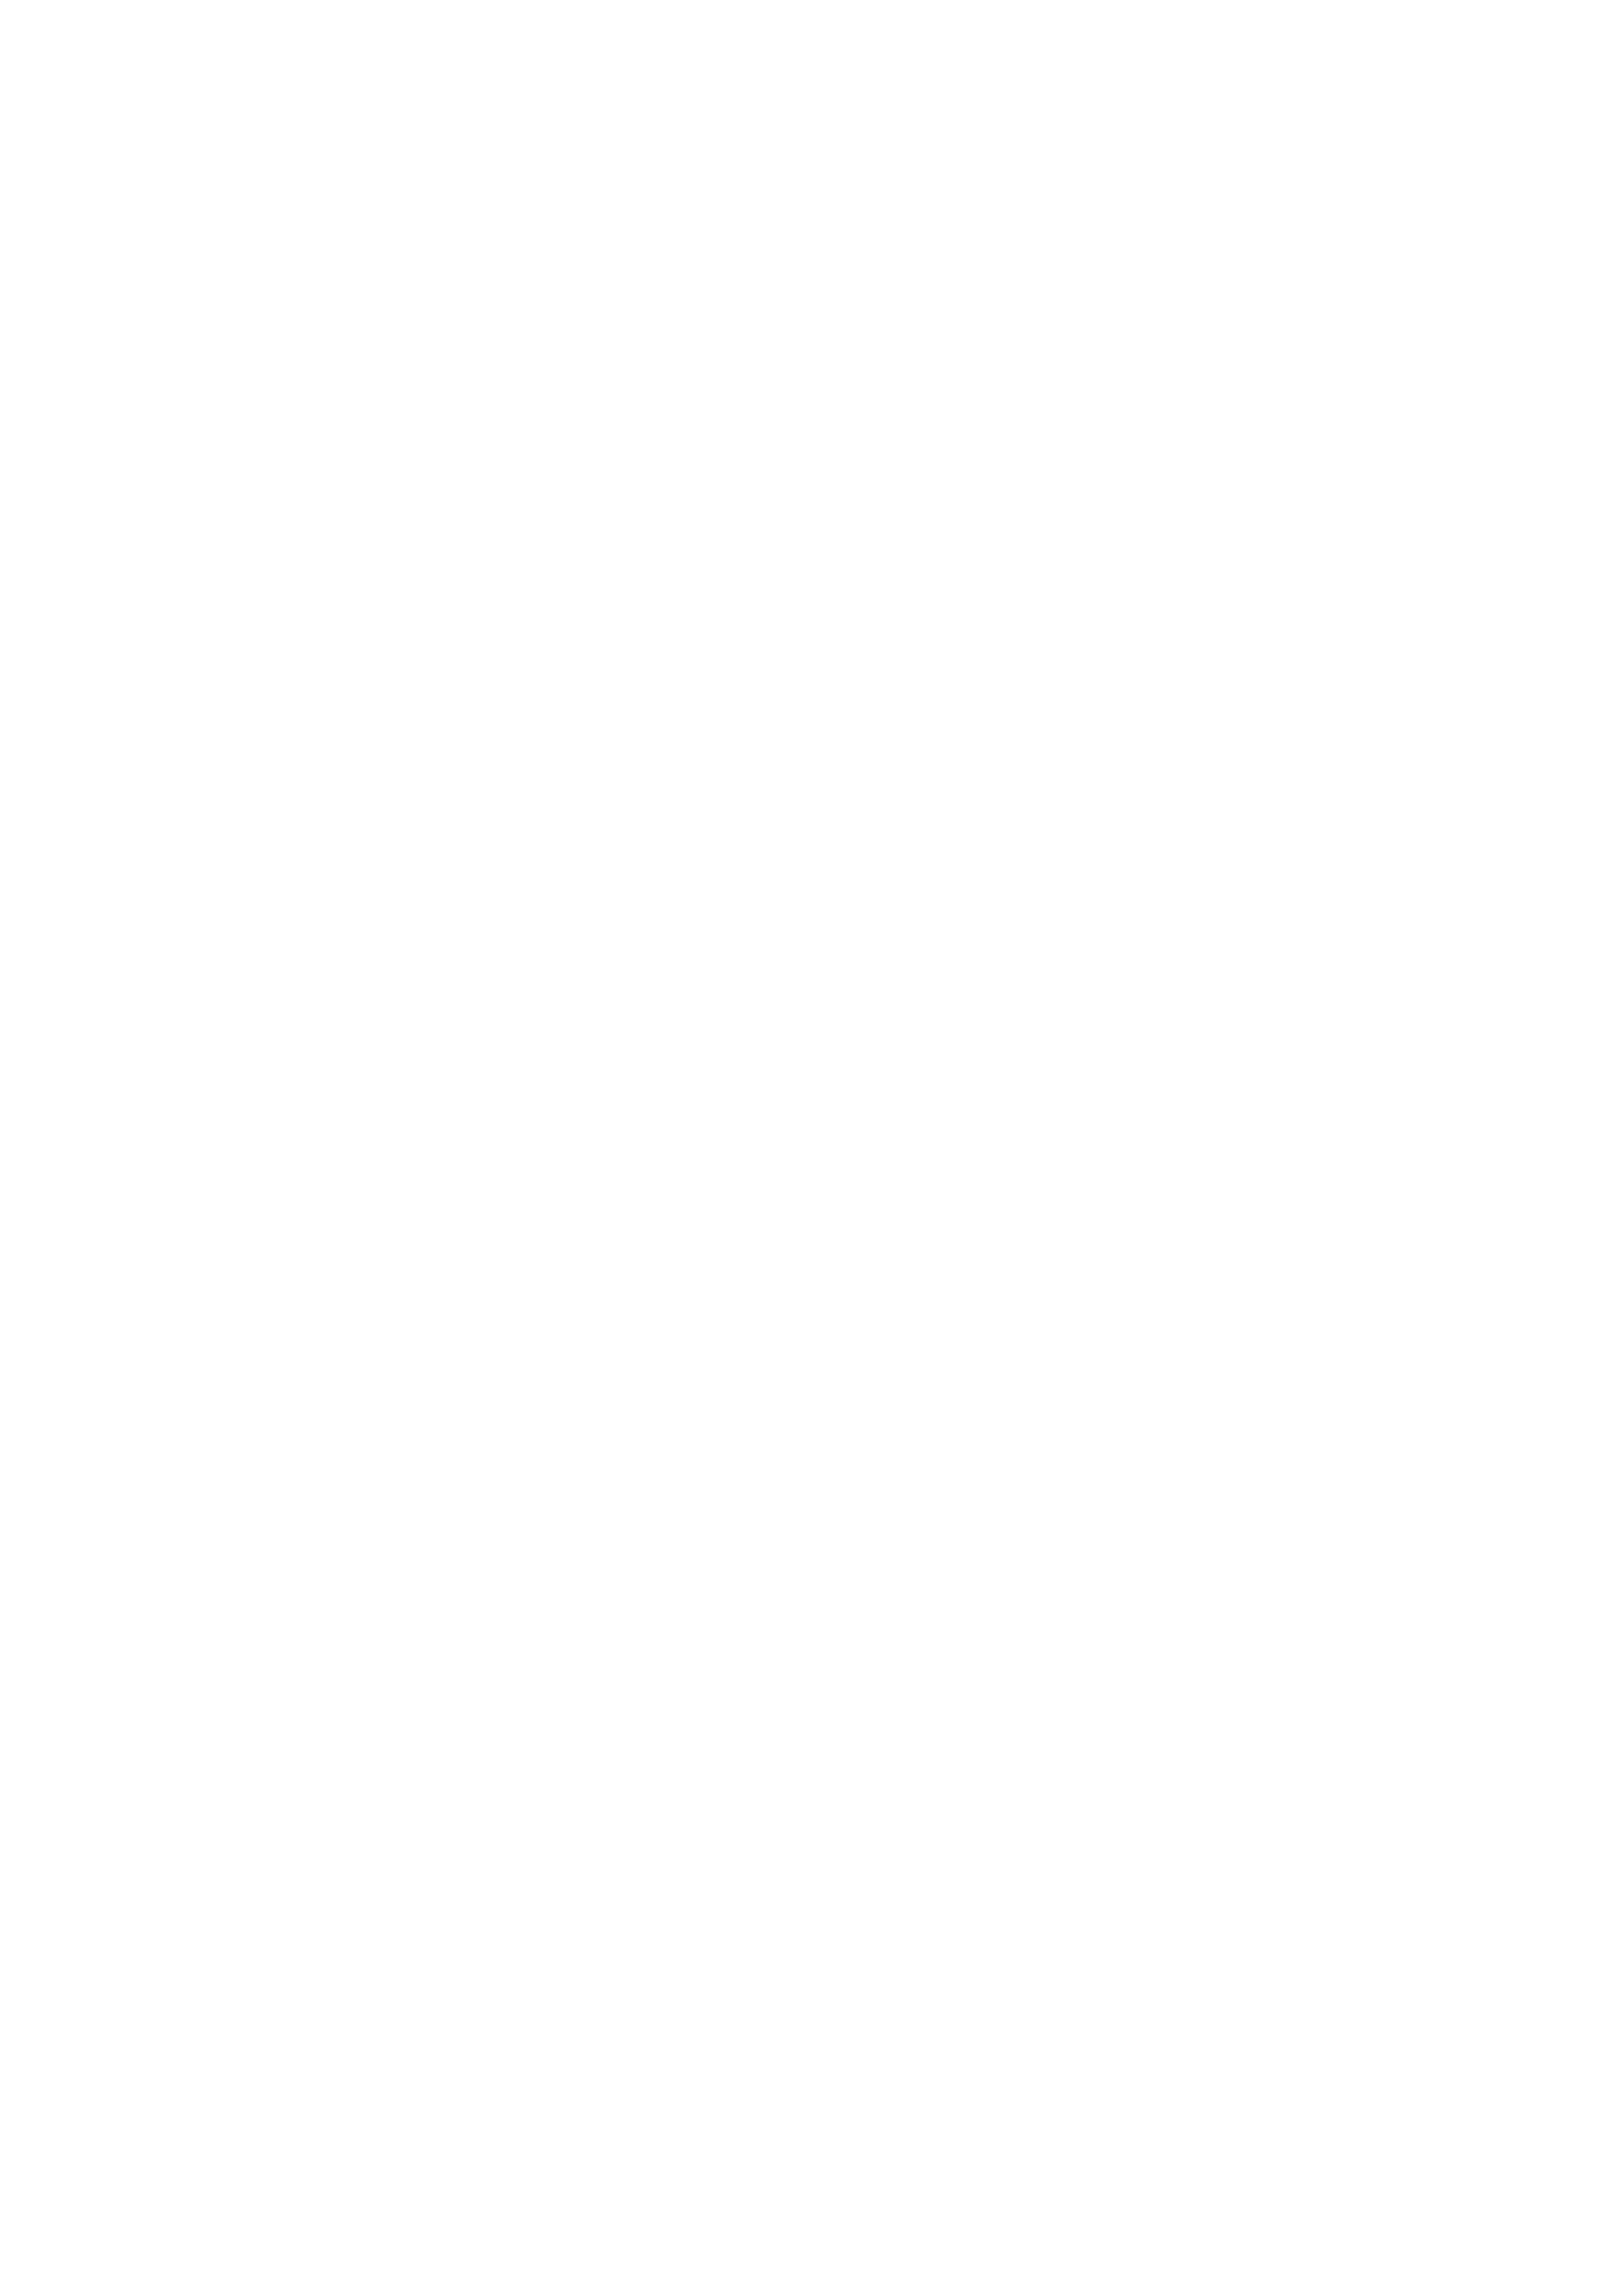 JDL Photos